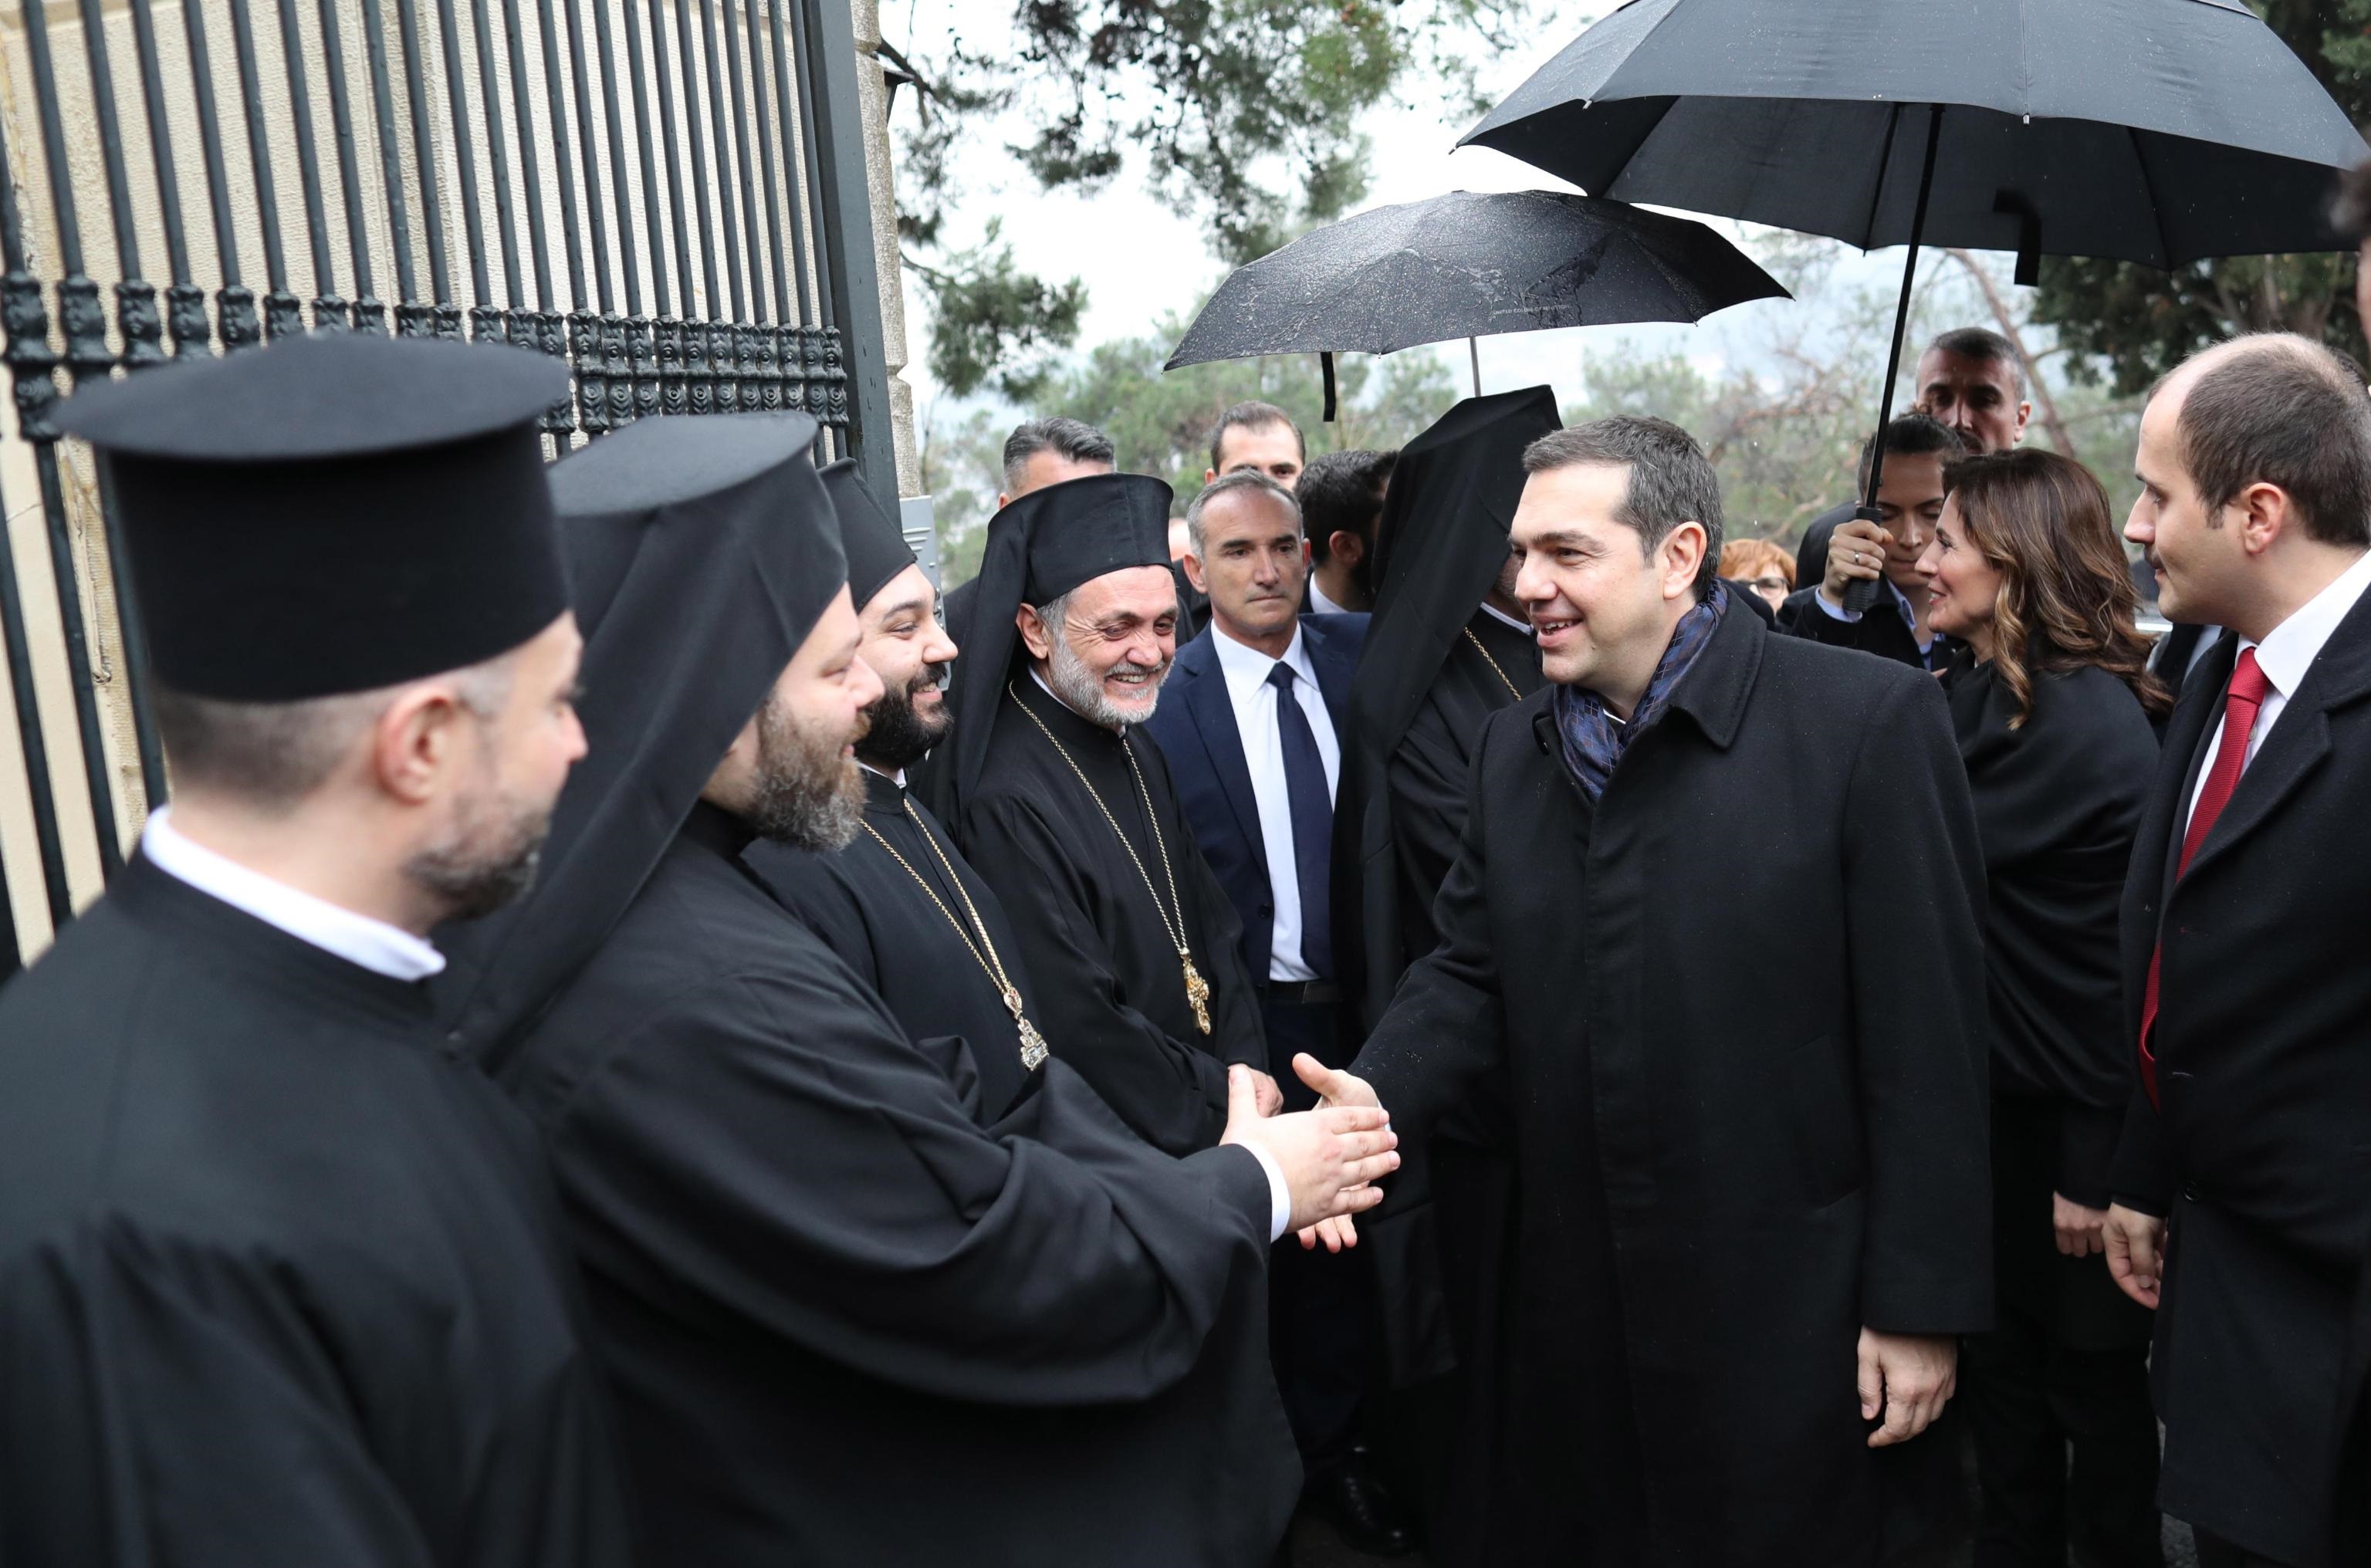 Il primo ministro greco stringe la mano ad alcuni sacerdoti ortodossi